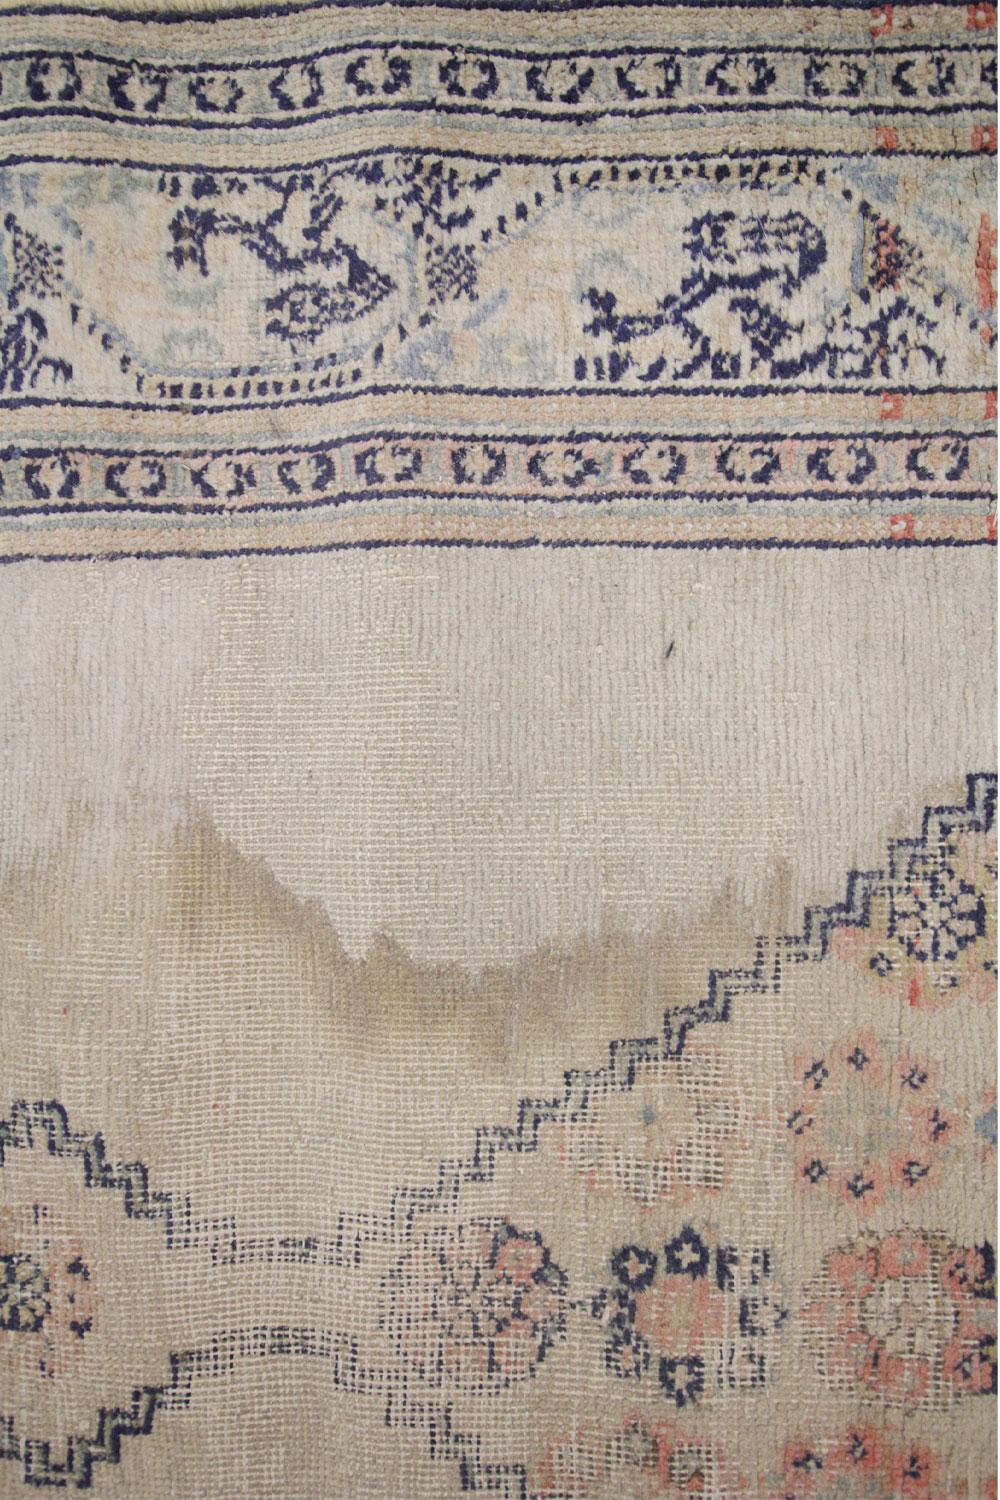 Cotton Antique Runner Rug 1900, Caucasian Runner Handmade Cream Wool Carpet For Sale